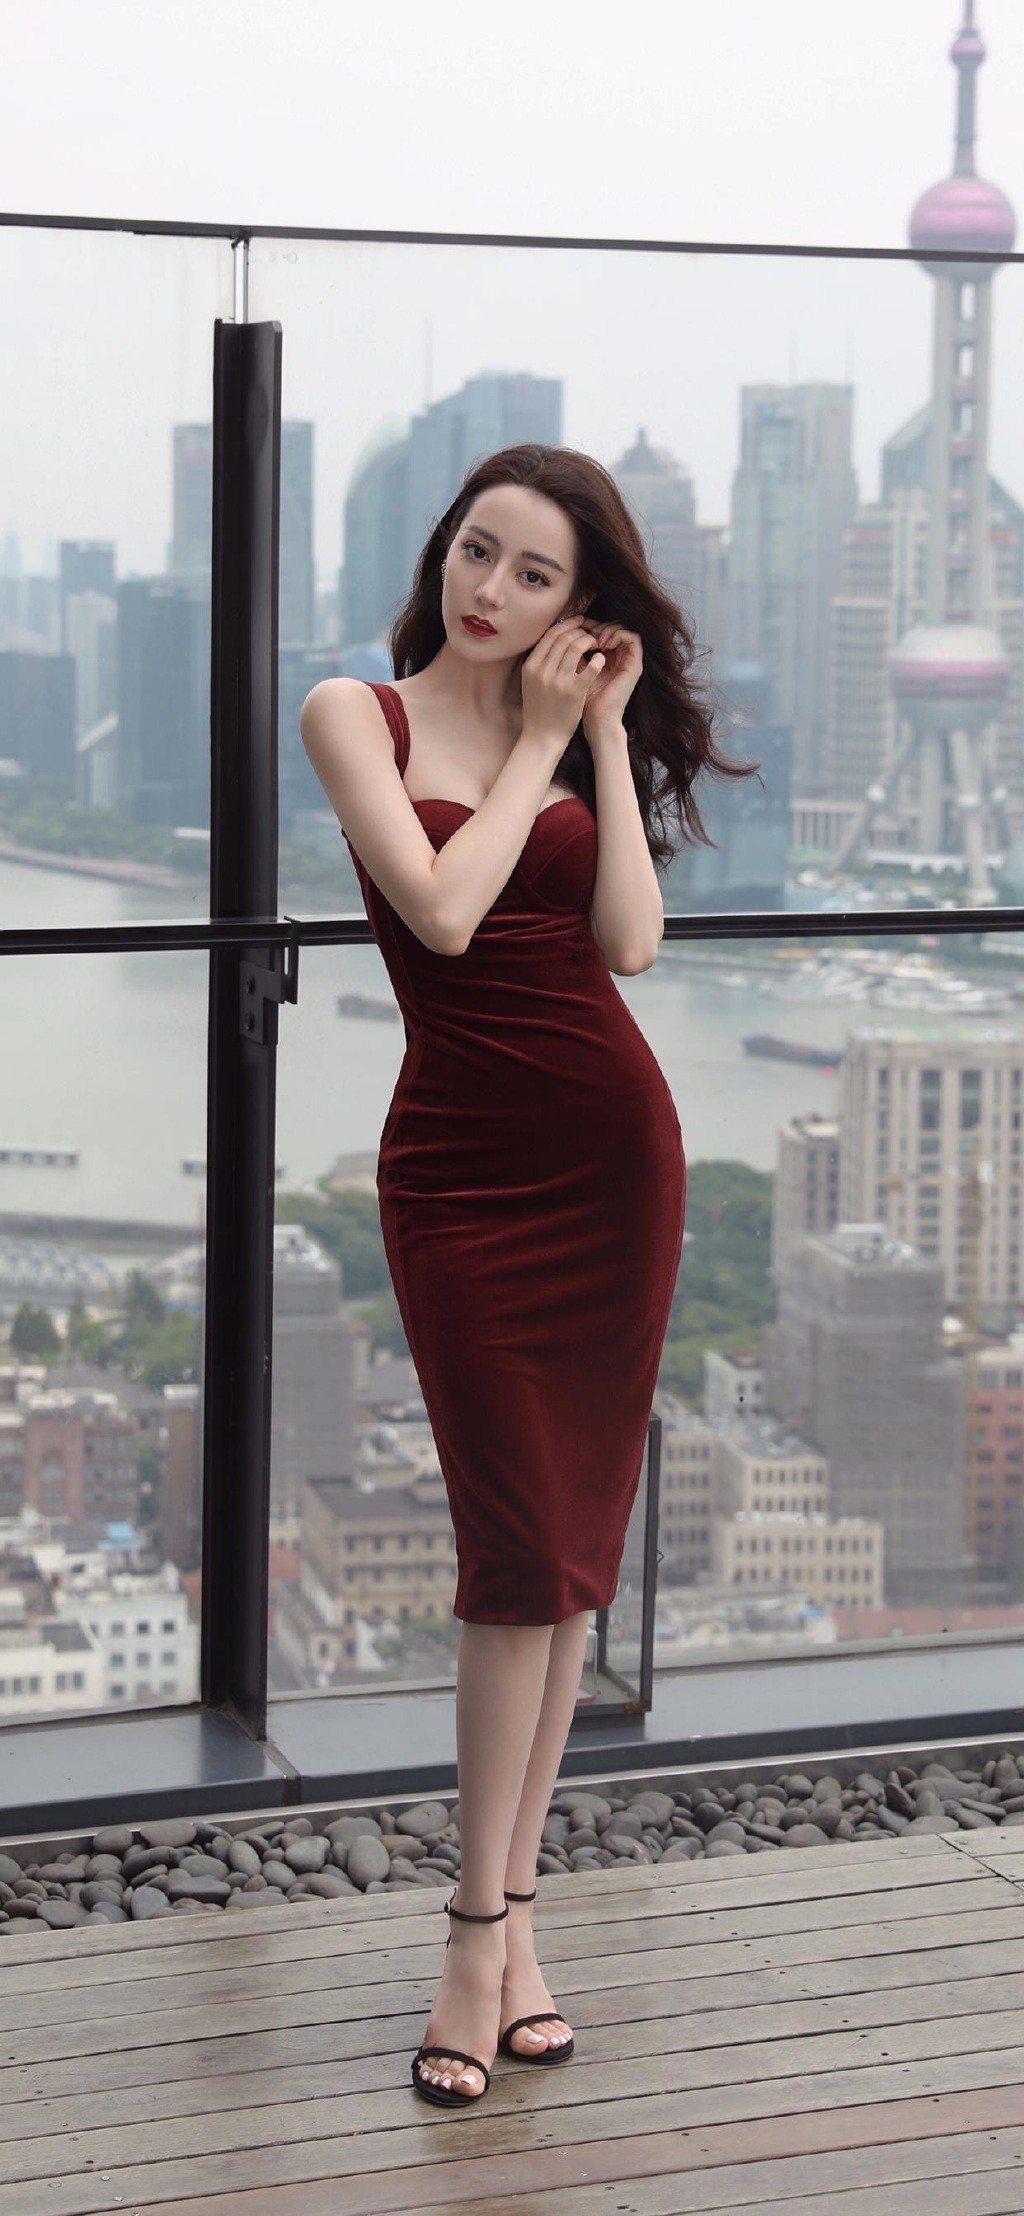 迪丽热巴吊带红裙优雅性感手机壁纸